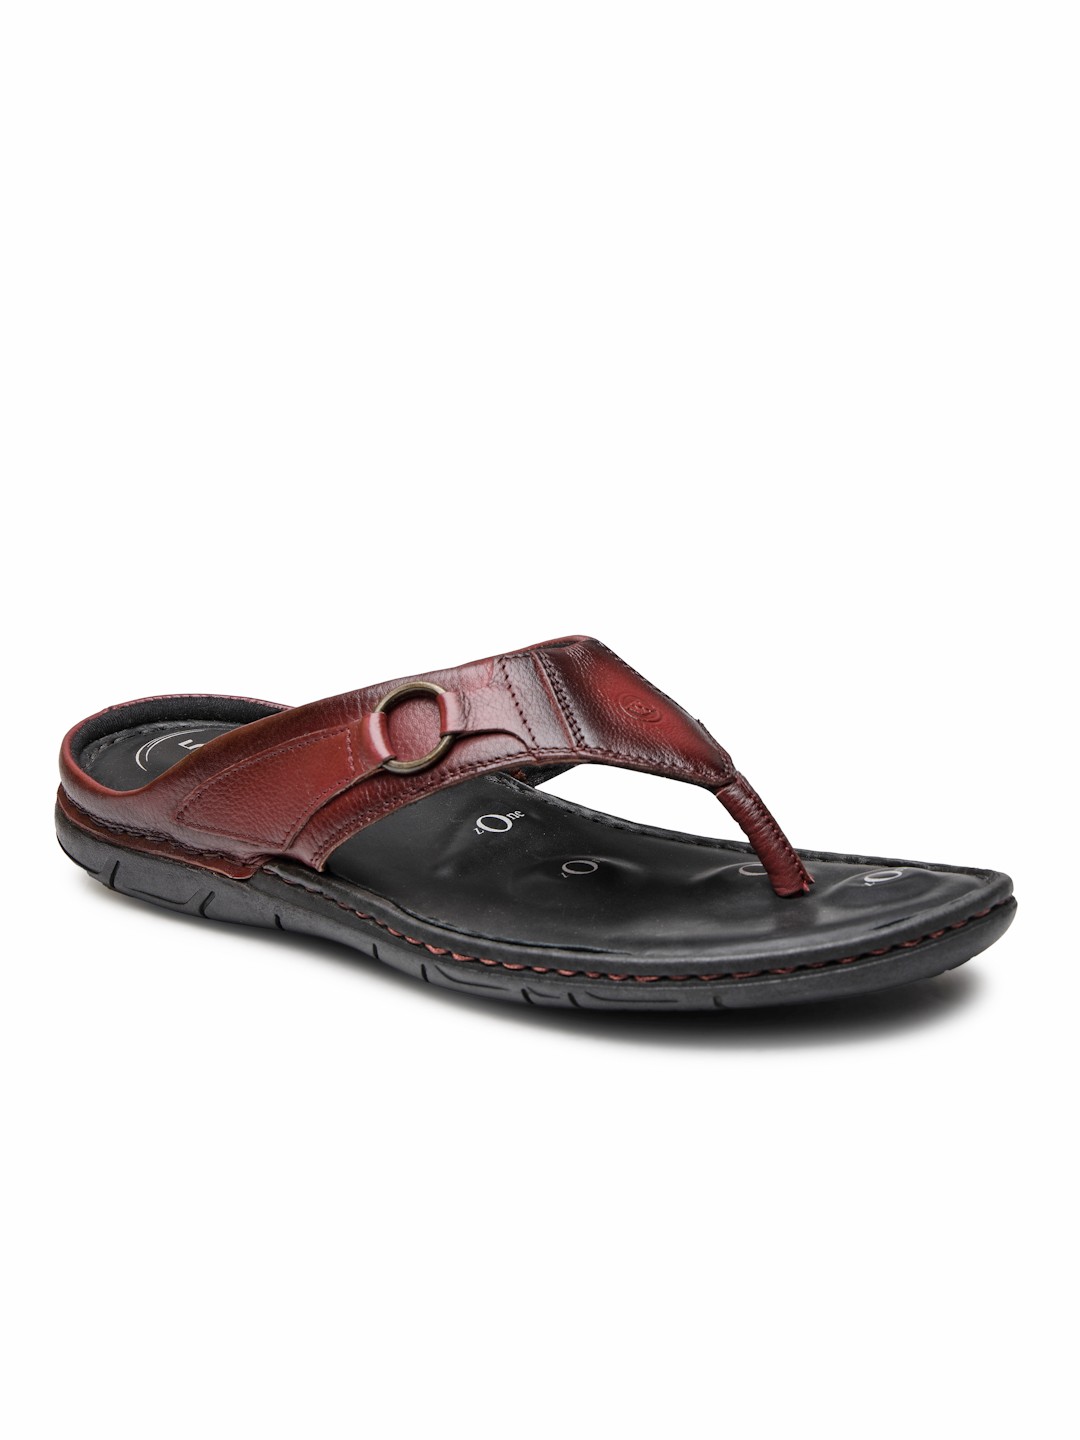 Buy Von Wellx Germany Comfort Men's Brown Slippers Riley Online in Kochi